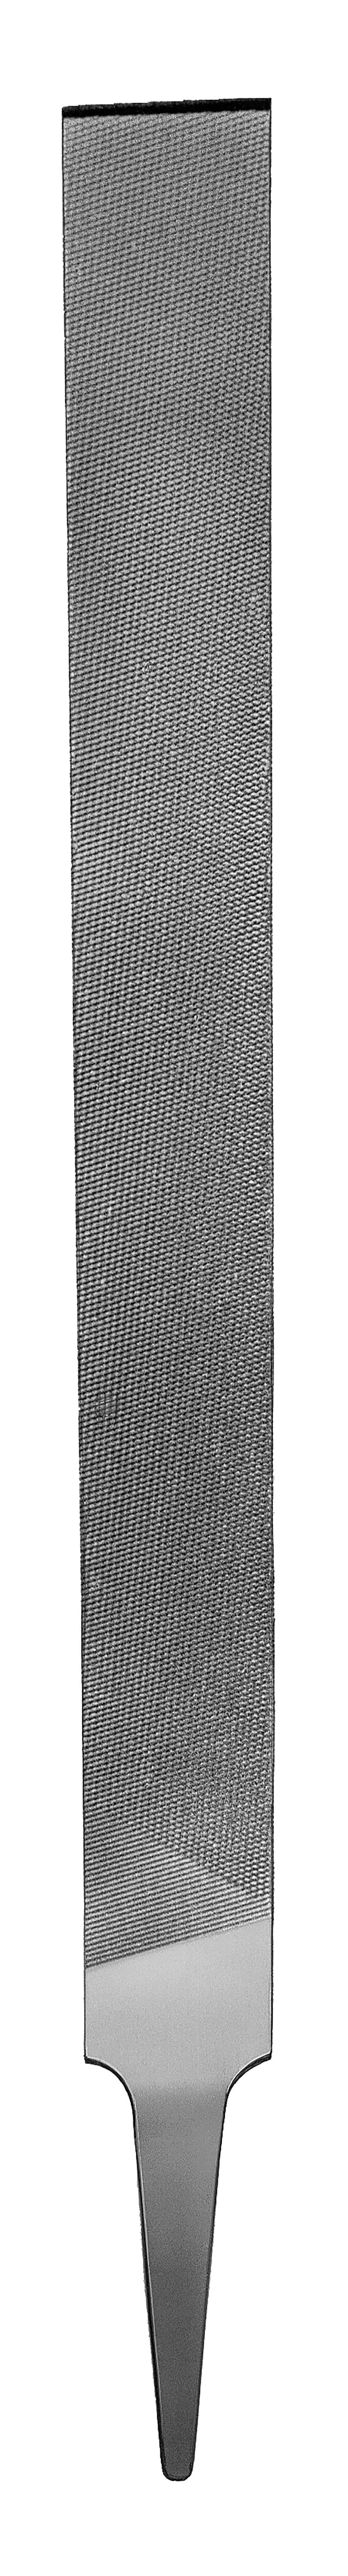 Cimco 20 6613 Werkstattfeile Form E (halbrund), Hieb 3, 200 mm, ohne Heft